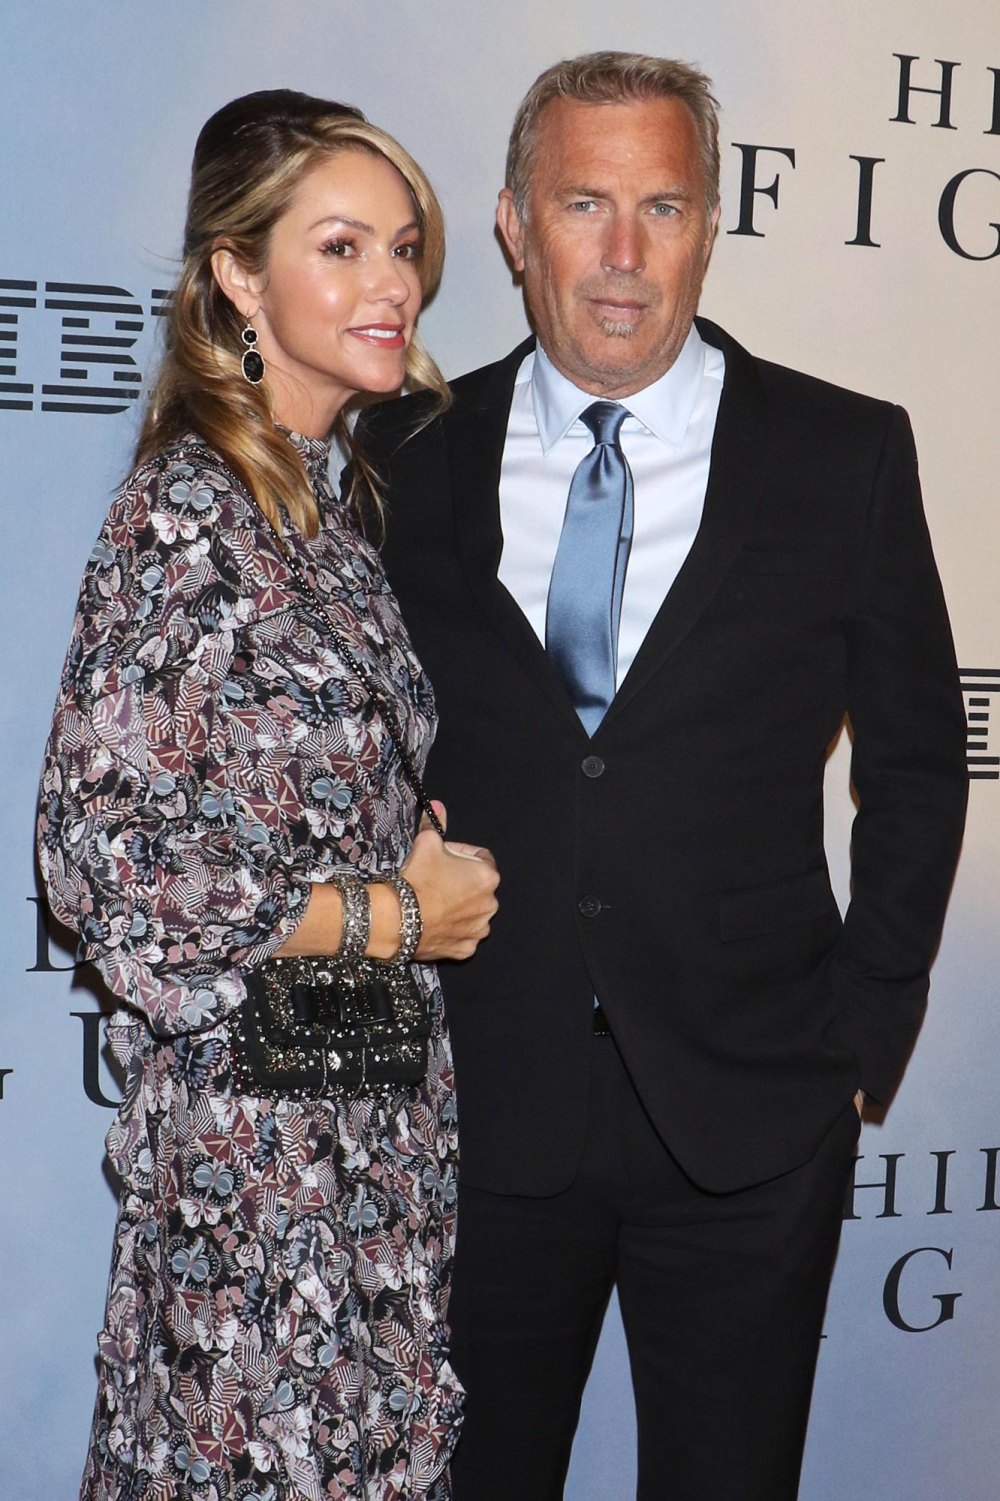 Kevin Costner's estranged wife wears Prada purse after begging